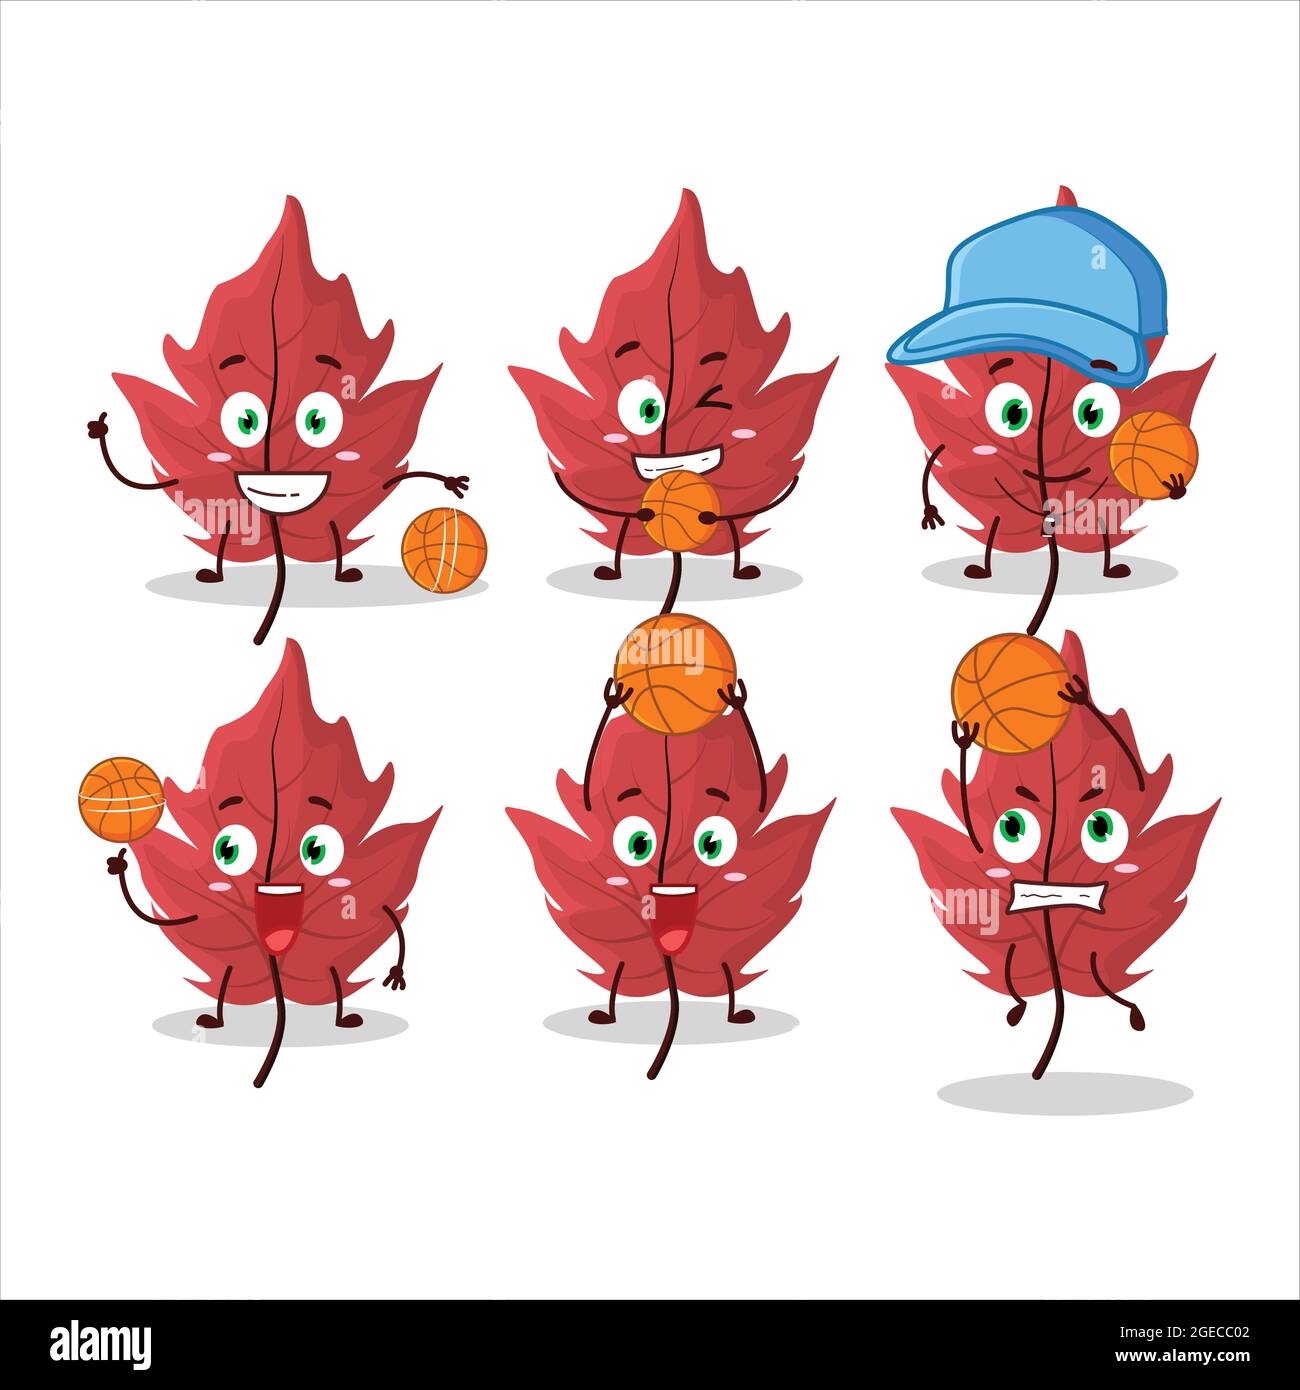 Personnage de dessin animé rouge à feuilles d'automne talentueux en tant qu'athlète de basket-ball. Illustration vectorielle Illustration de Vecteur